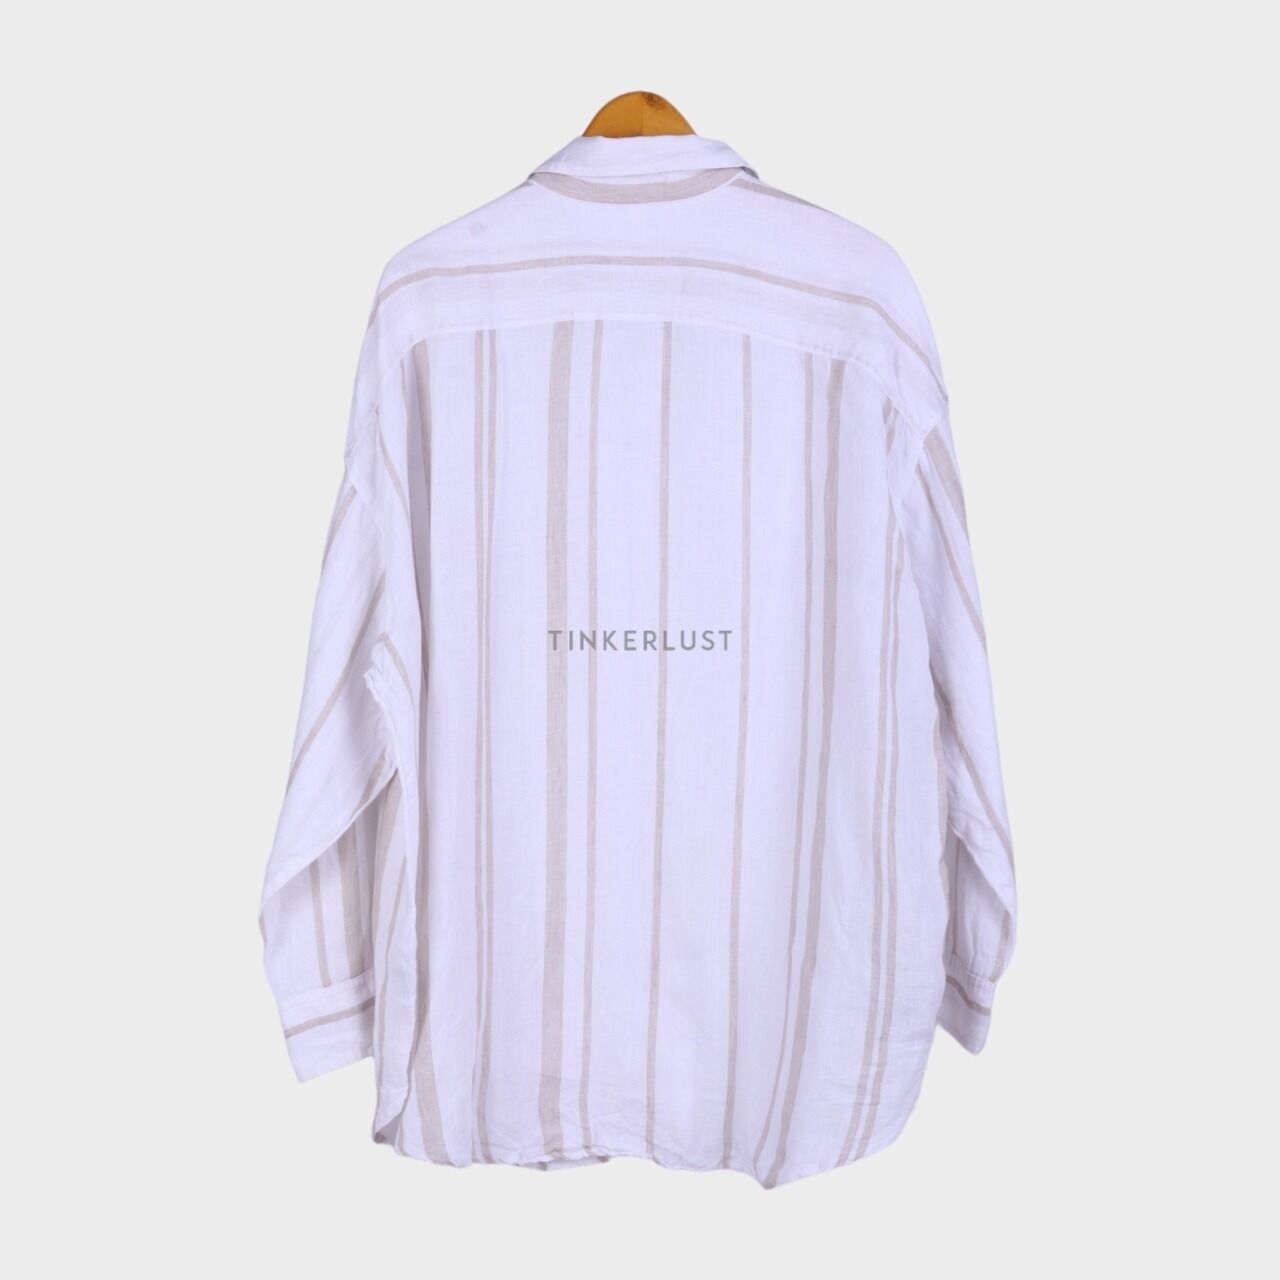 H&M Beige & White Stripes Shirt